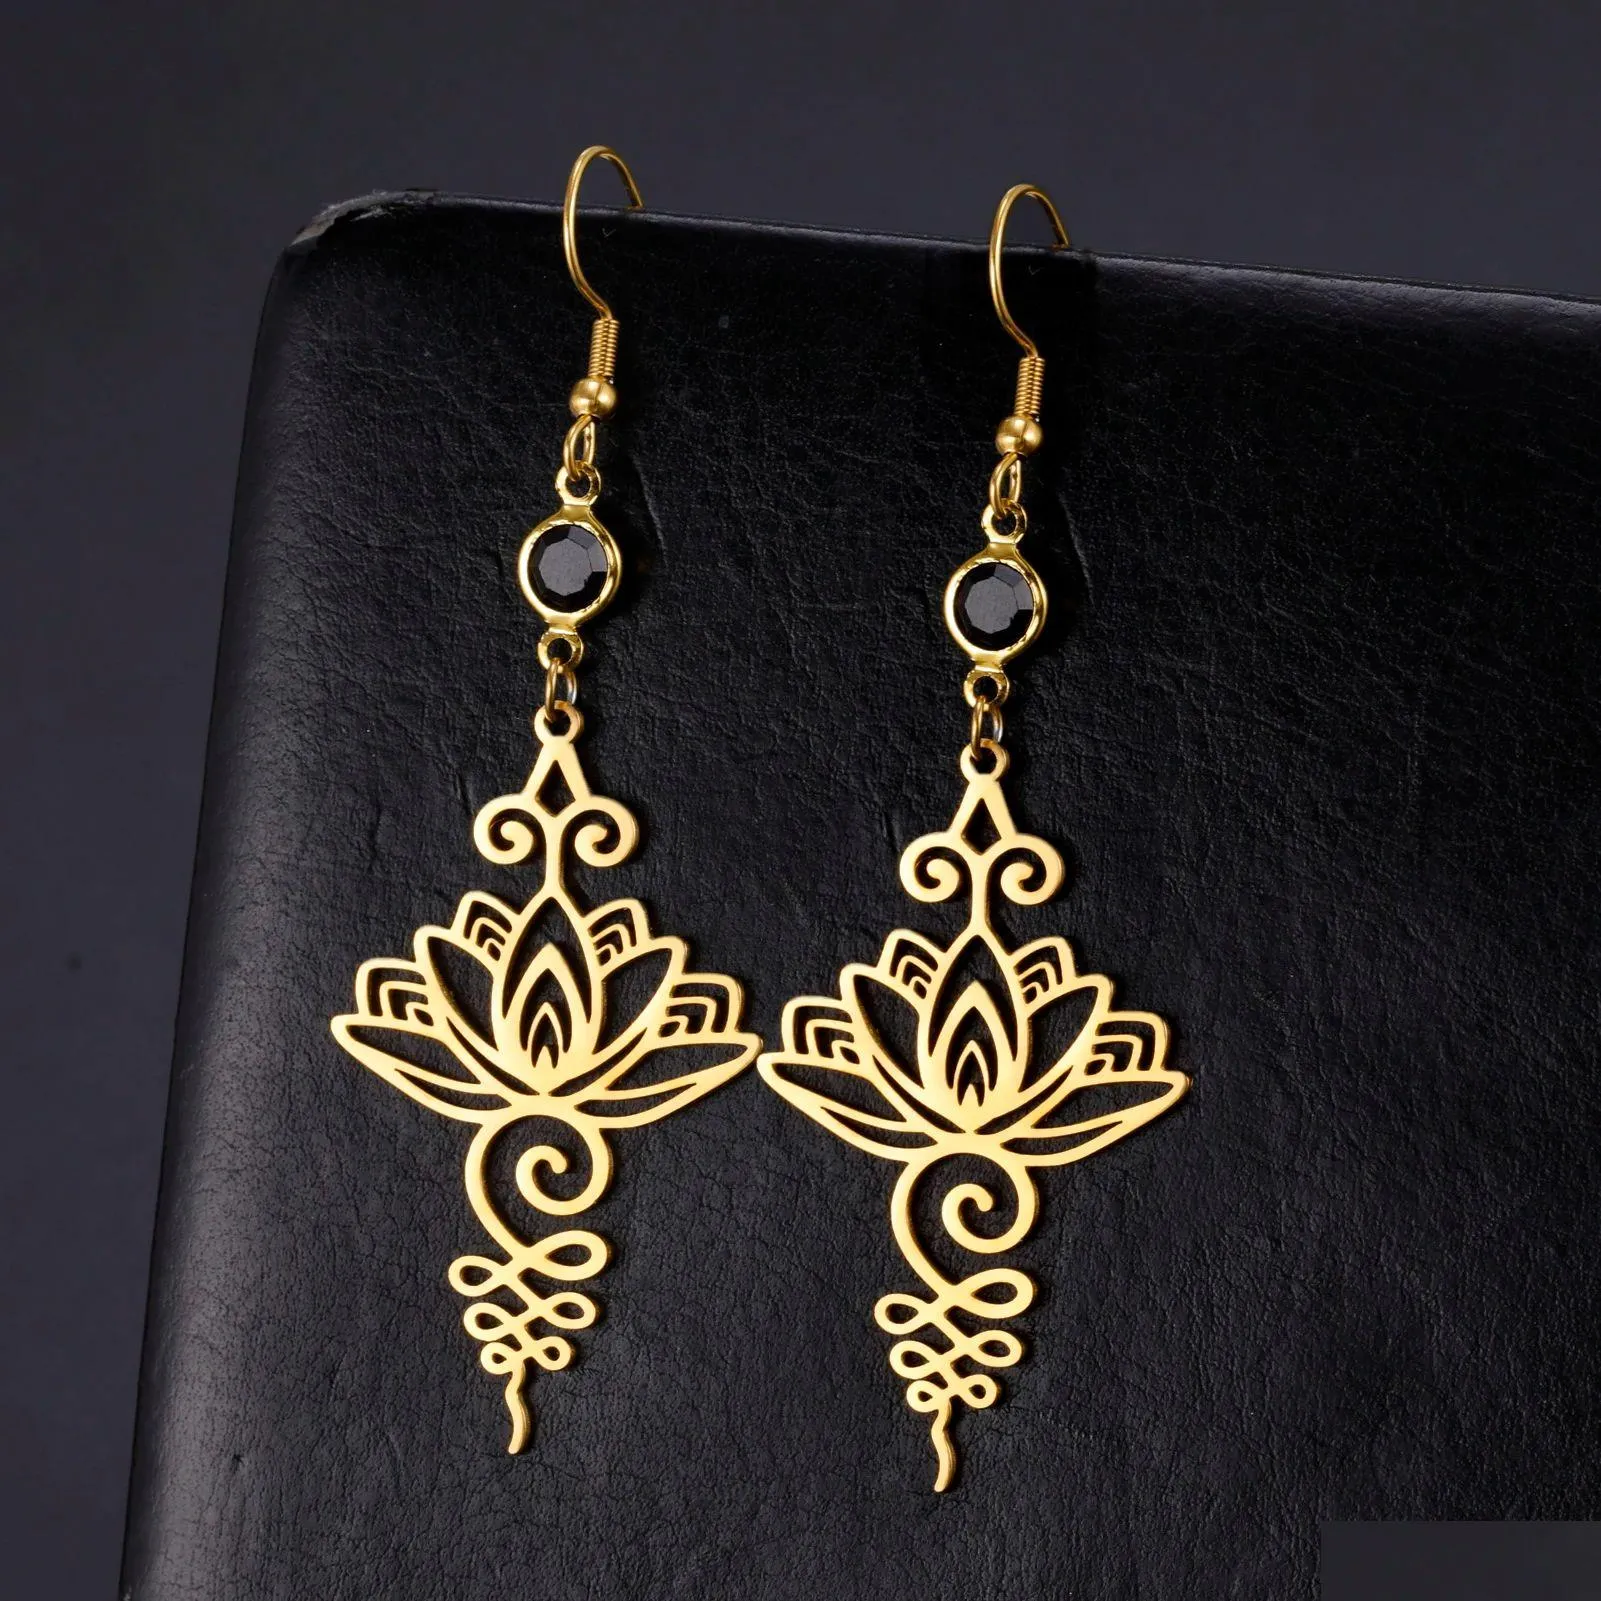 Unalome Pendant Long 14k Gold Earrings Hippie Yoga Lotus Flower Drop Earrings for Women Ethno Buddhism Jewelry